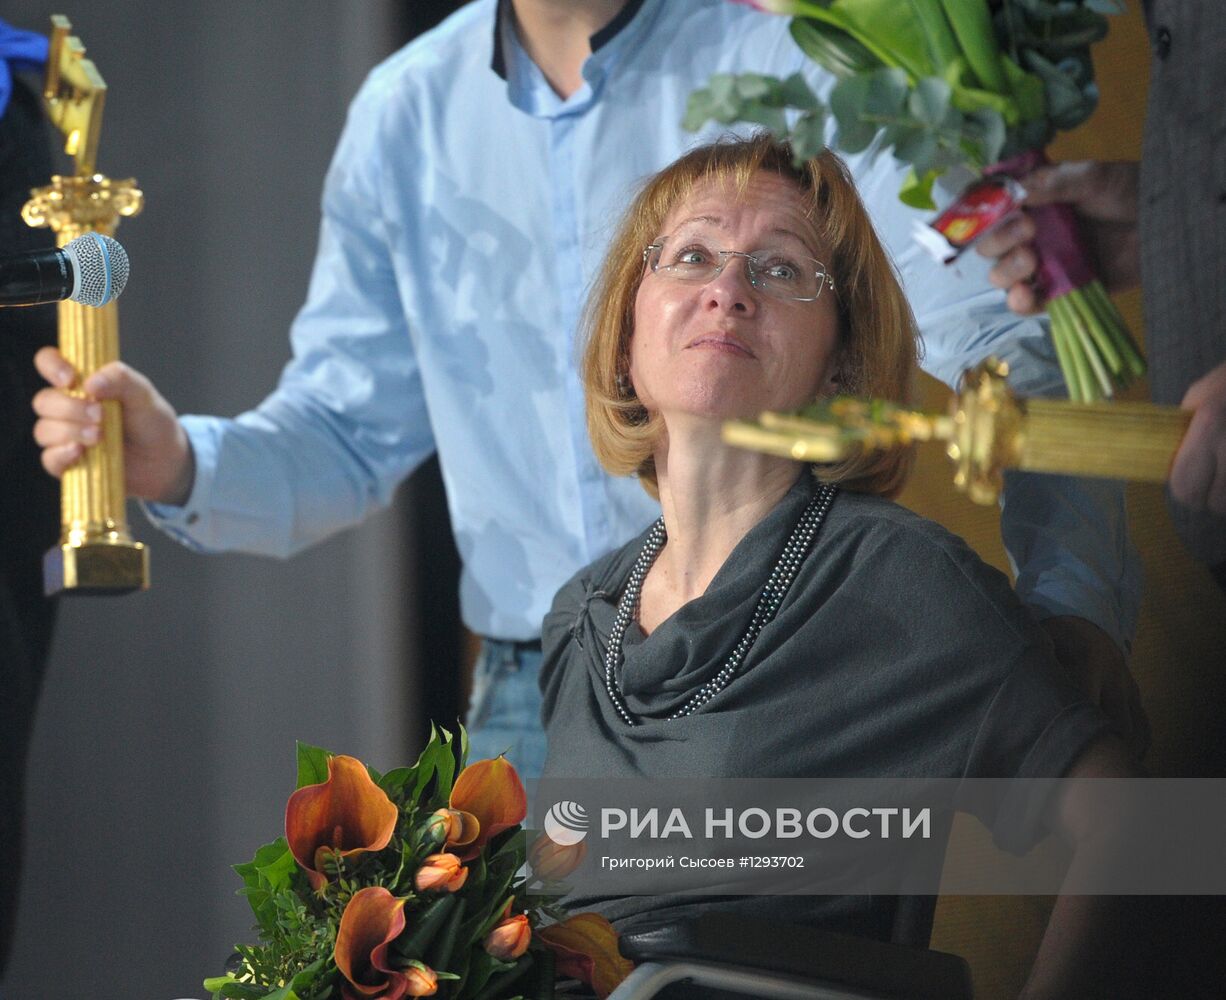 IX торжественная церемония вручения "Премии Рунета 2012"